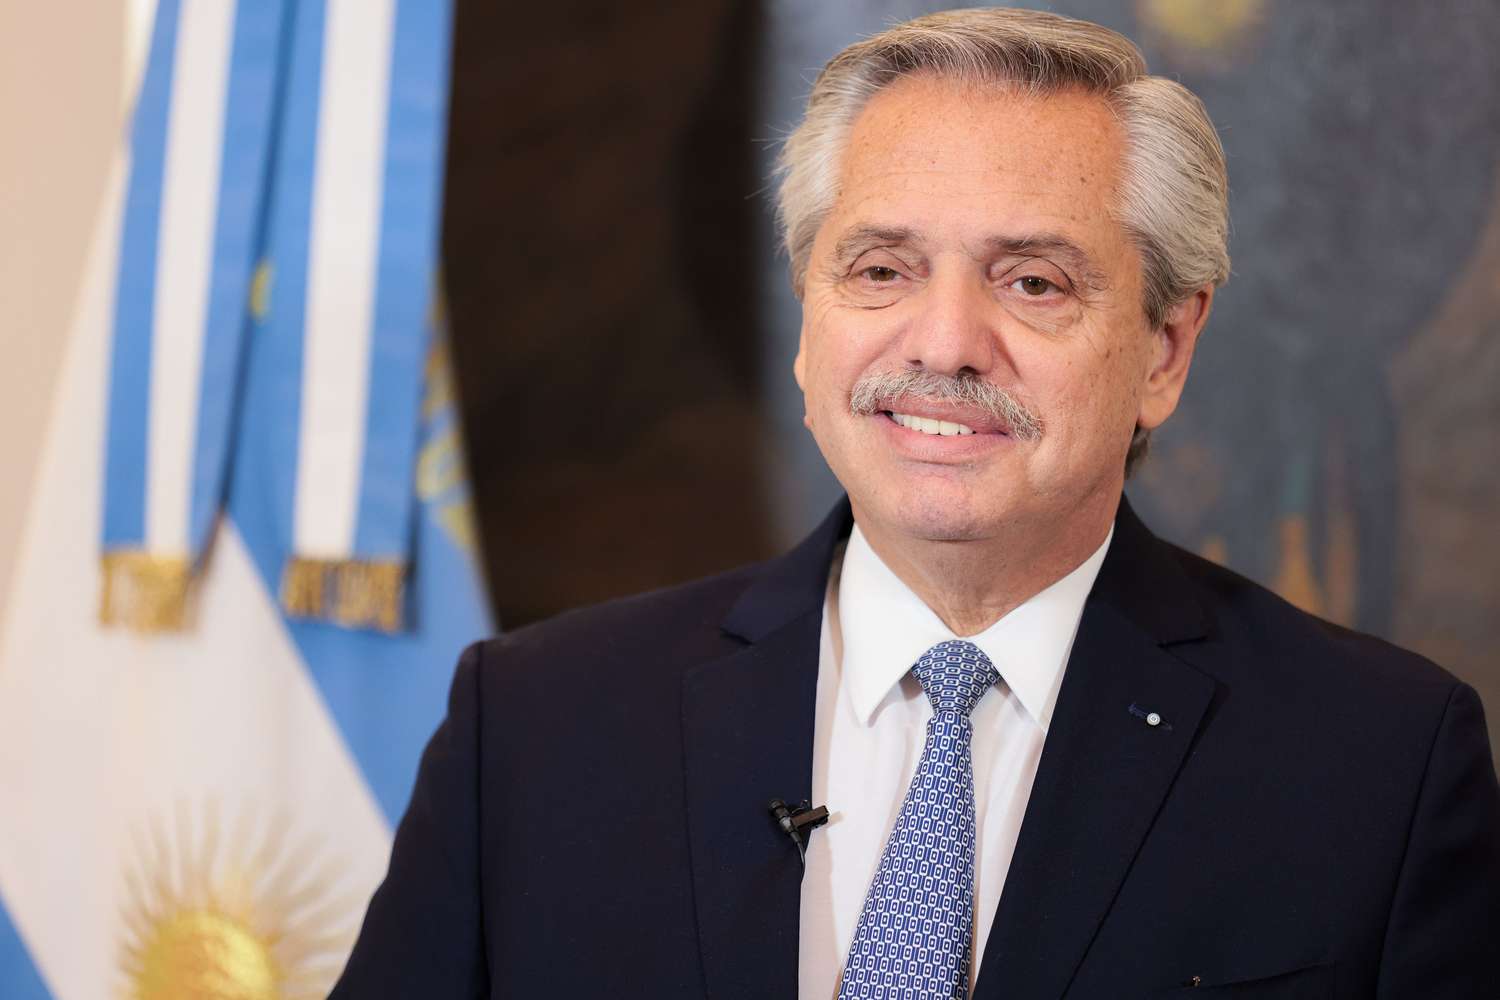 El Presidente, Alberto Fernández, expuso ante la ONU.